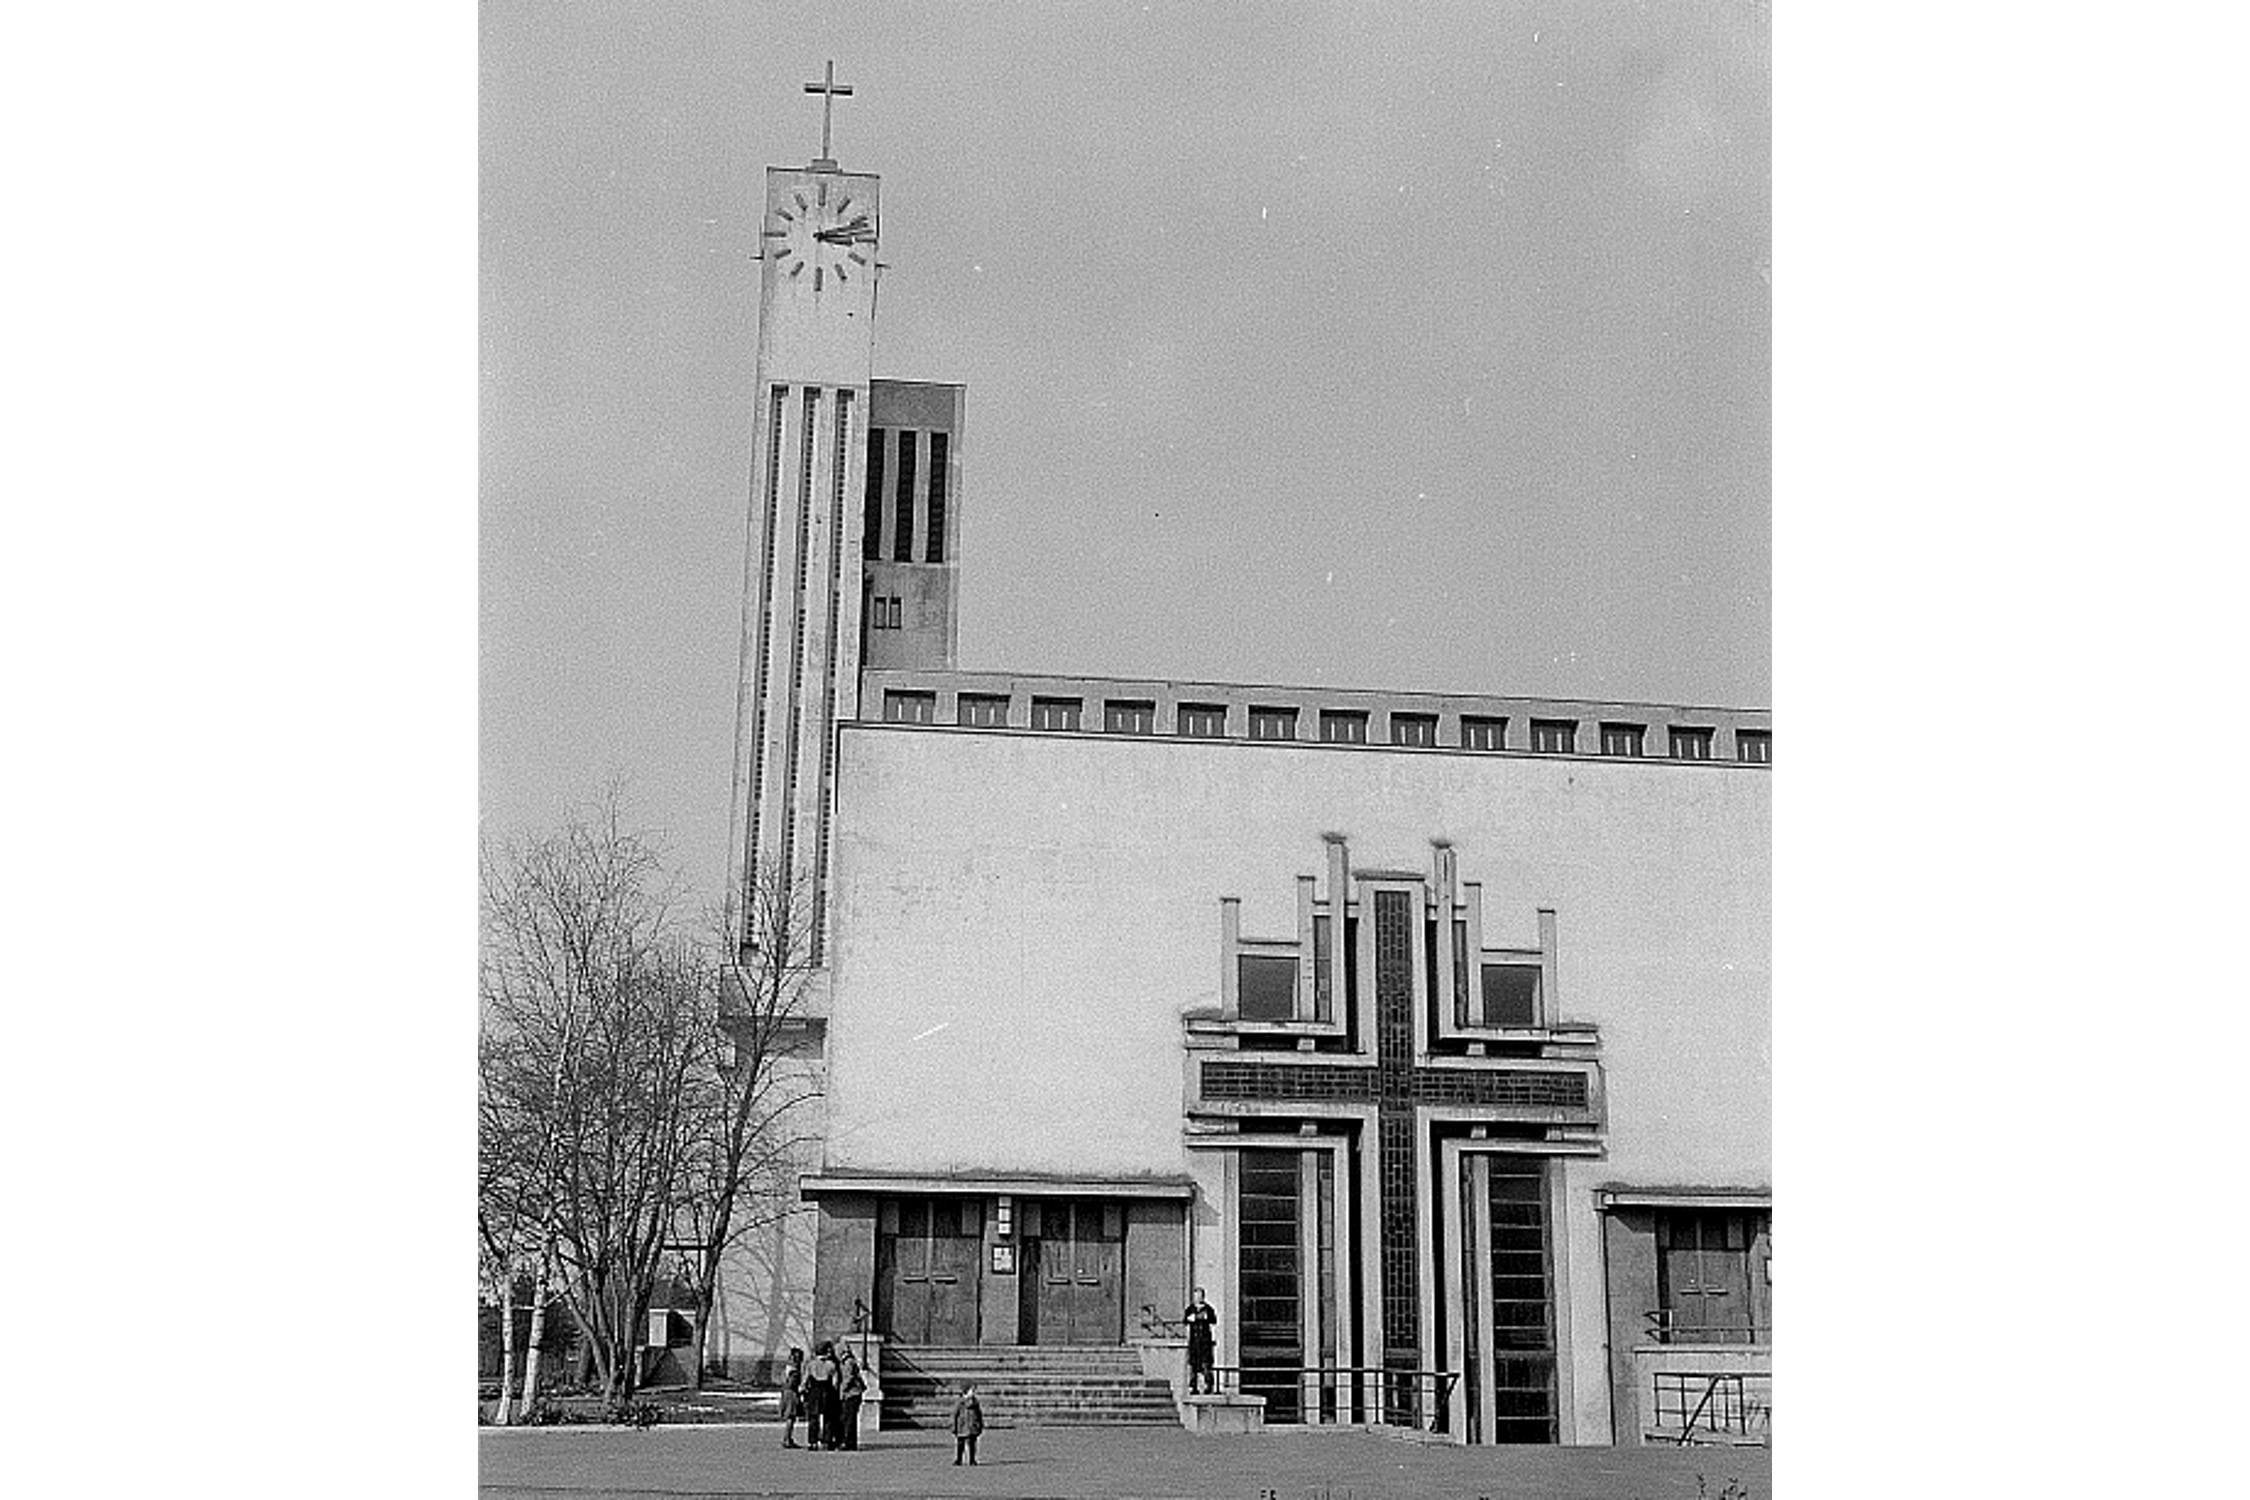 Ansicht aus dem Jahr 1952 (Renate und Roger Rössing, CC BY-SA 3.0, https://commons.wikimedia.org/wiki/File:Fotothek_df_roe-neg_0006258_001_Teilansicht_der_Gohliser_Vers%C3%B6hnungskirche.jpg)